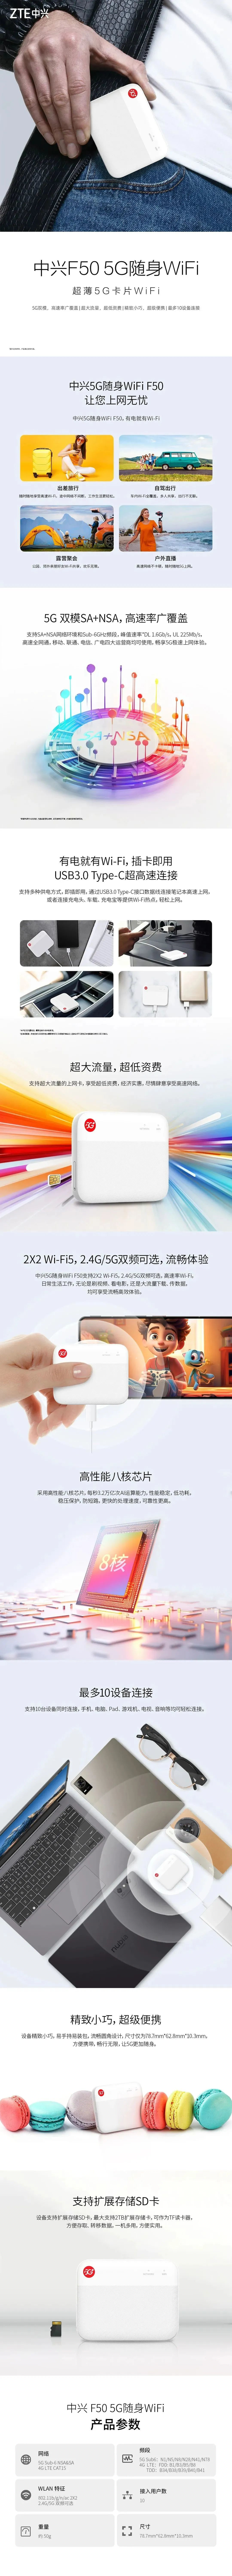 全球首款超薄5G卡片WiFi 中兴F50 今日正...